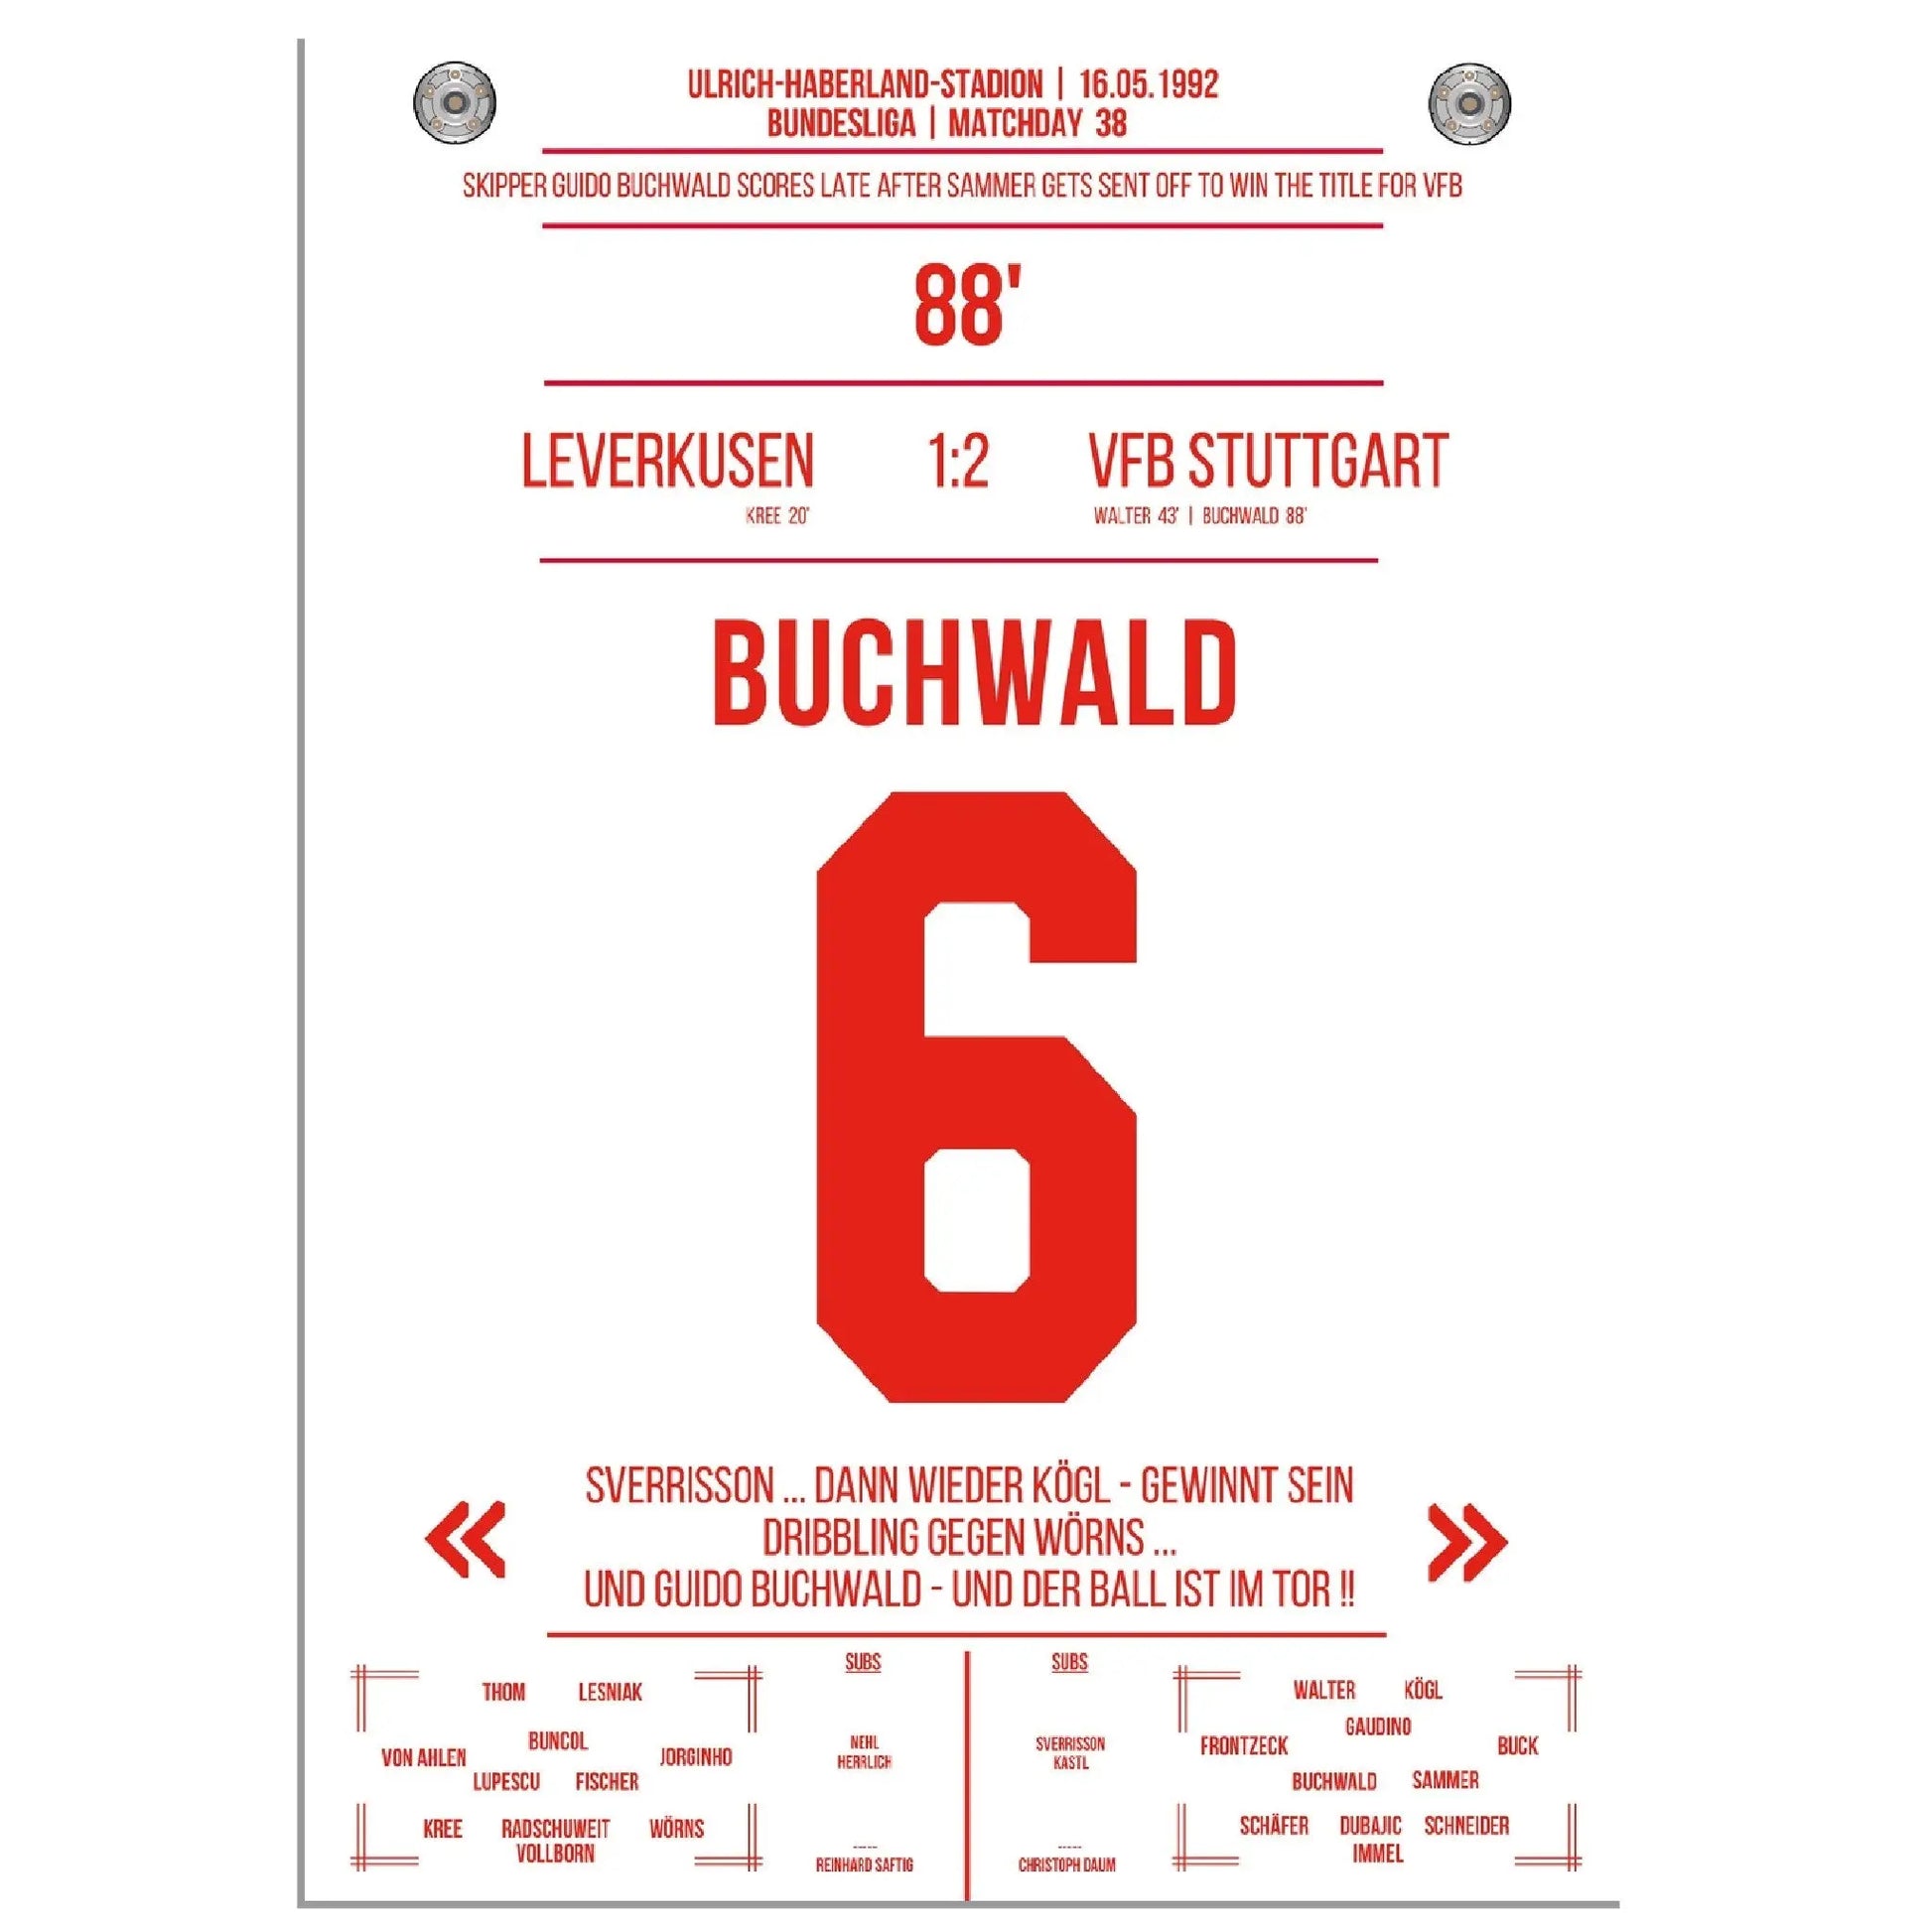 Buchwald's Tor zur Meisterschaft 1992 gegen Leverkusen 